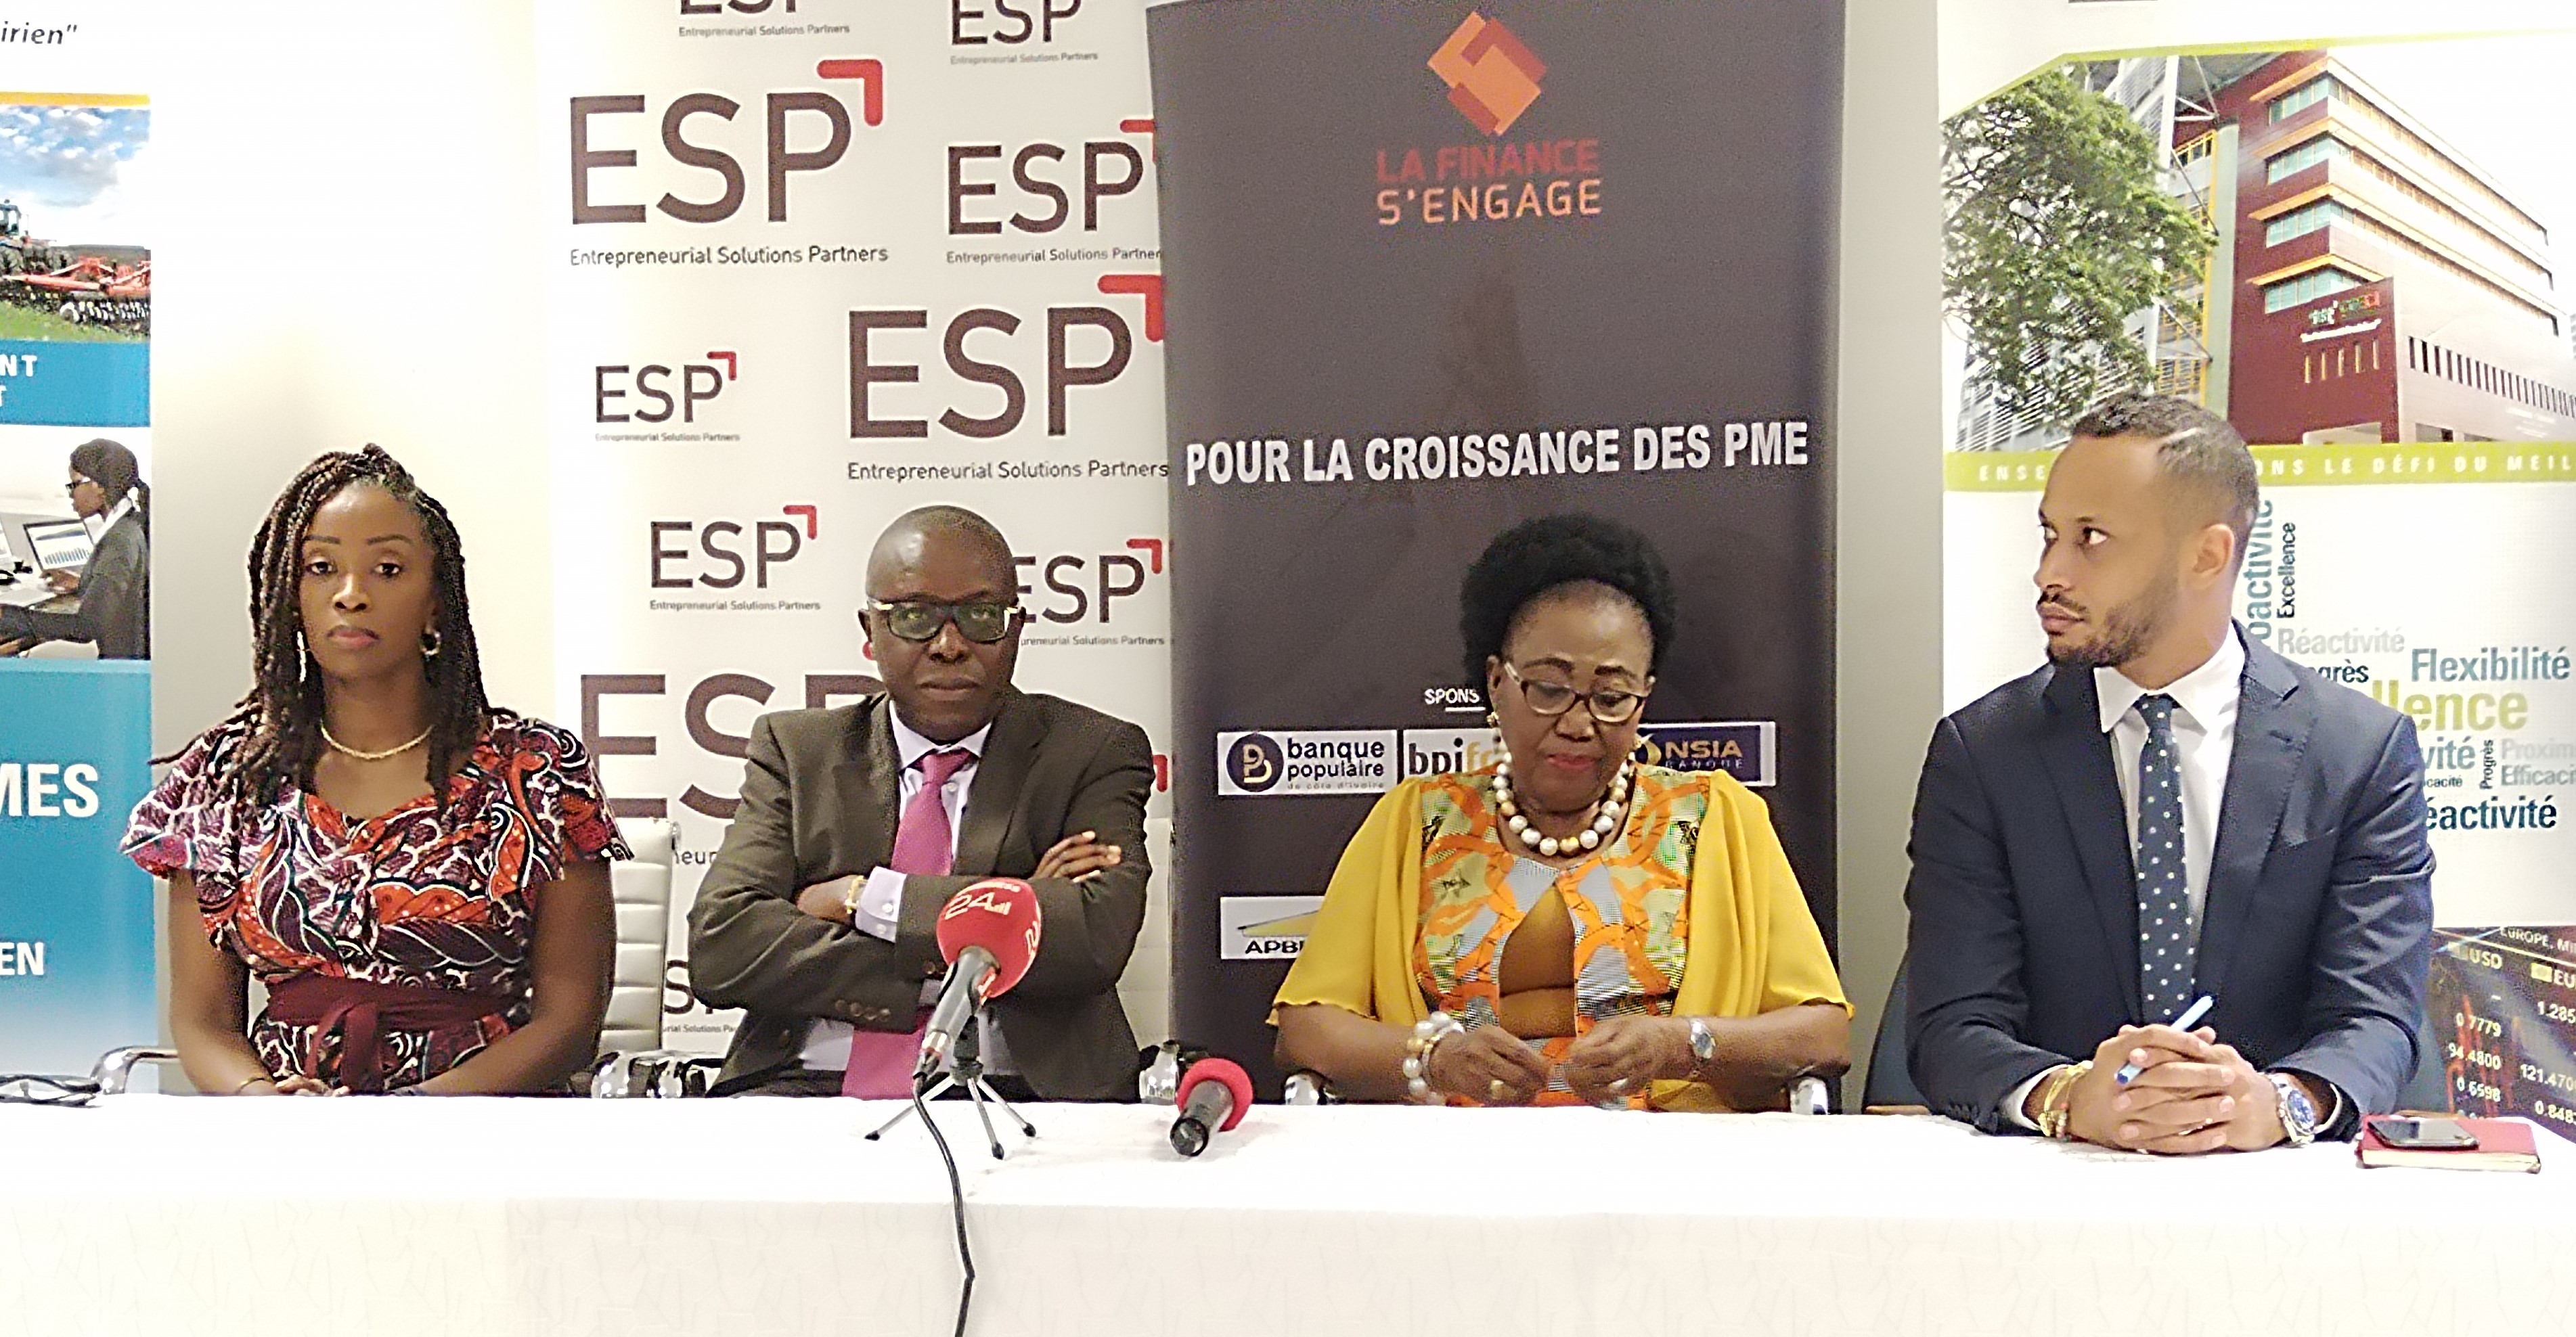 Côte d’Ivoire : la 6e édition de La Finance s’engage prévue le 17 novembre